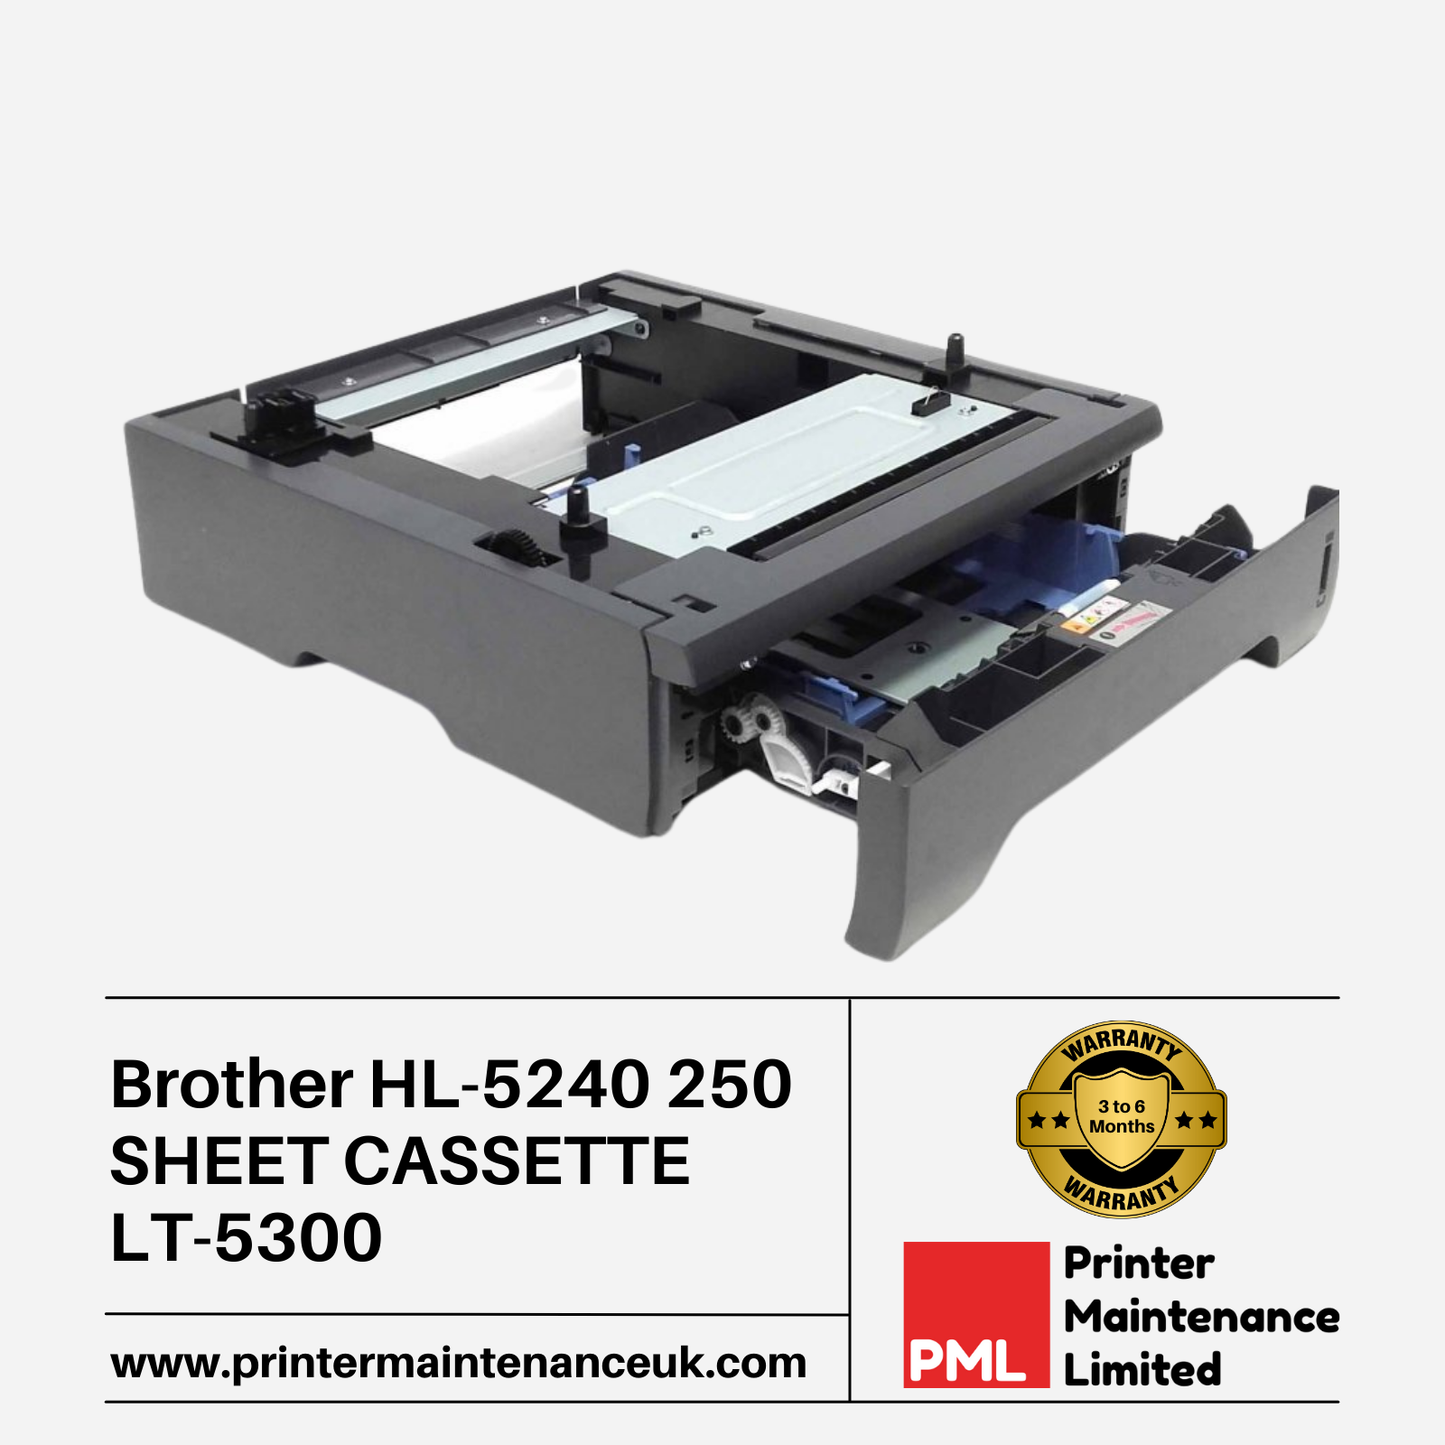 Brother HL-5240 250 Sheet Cassette - LT-5300